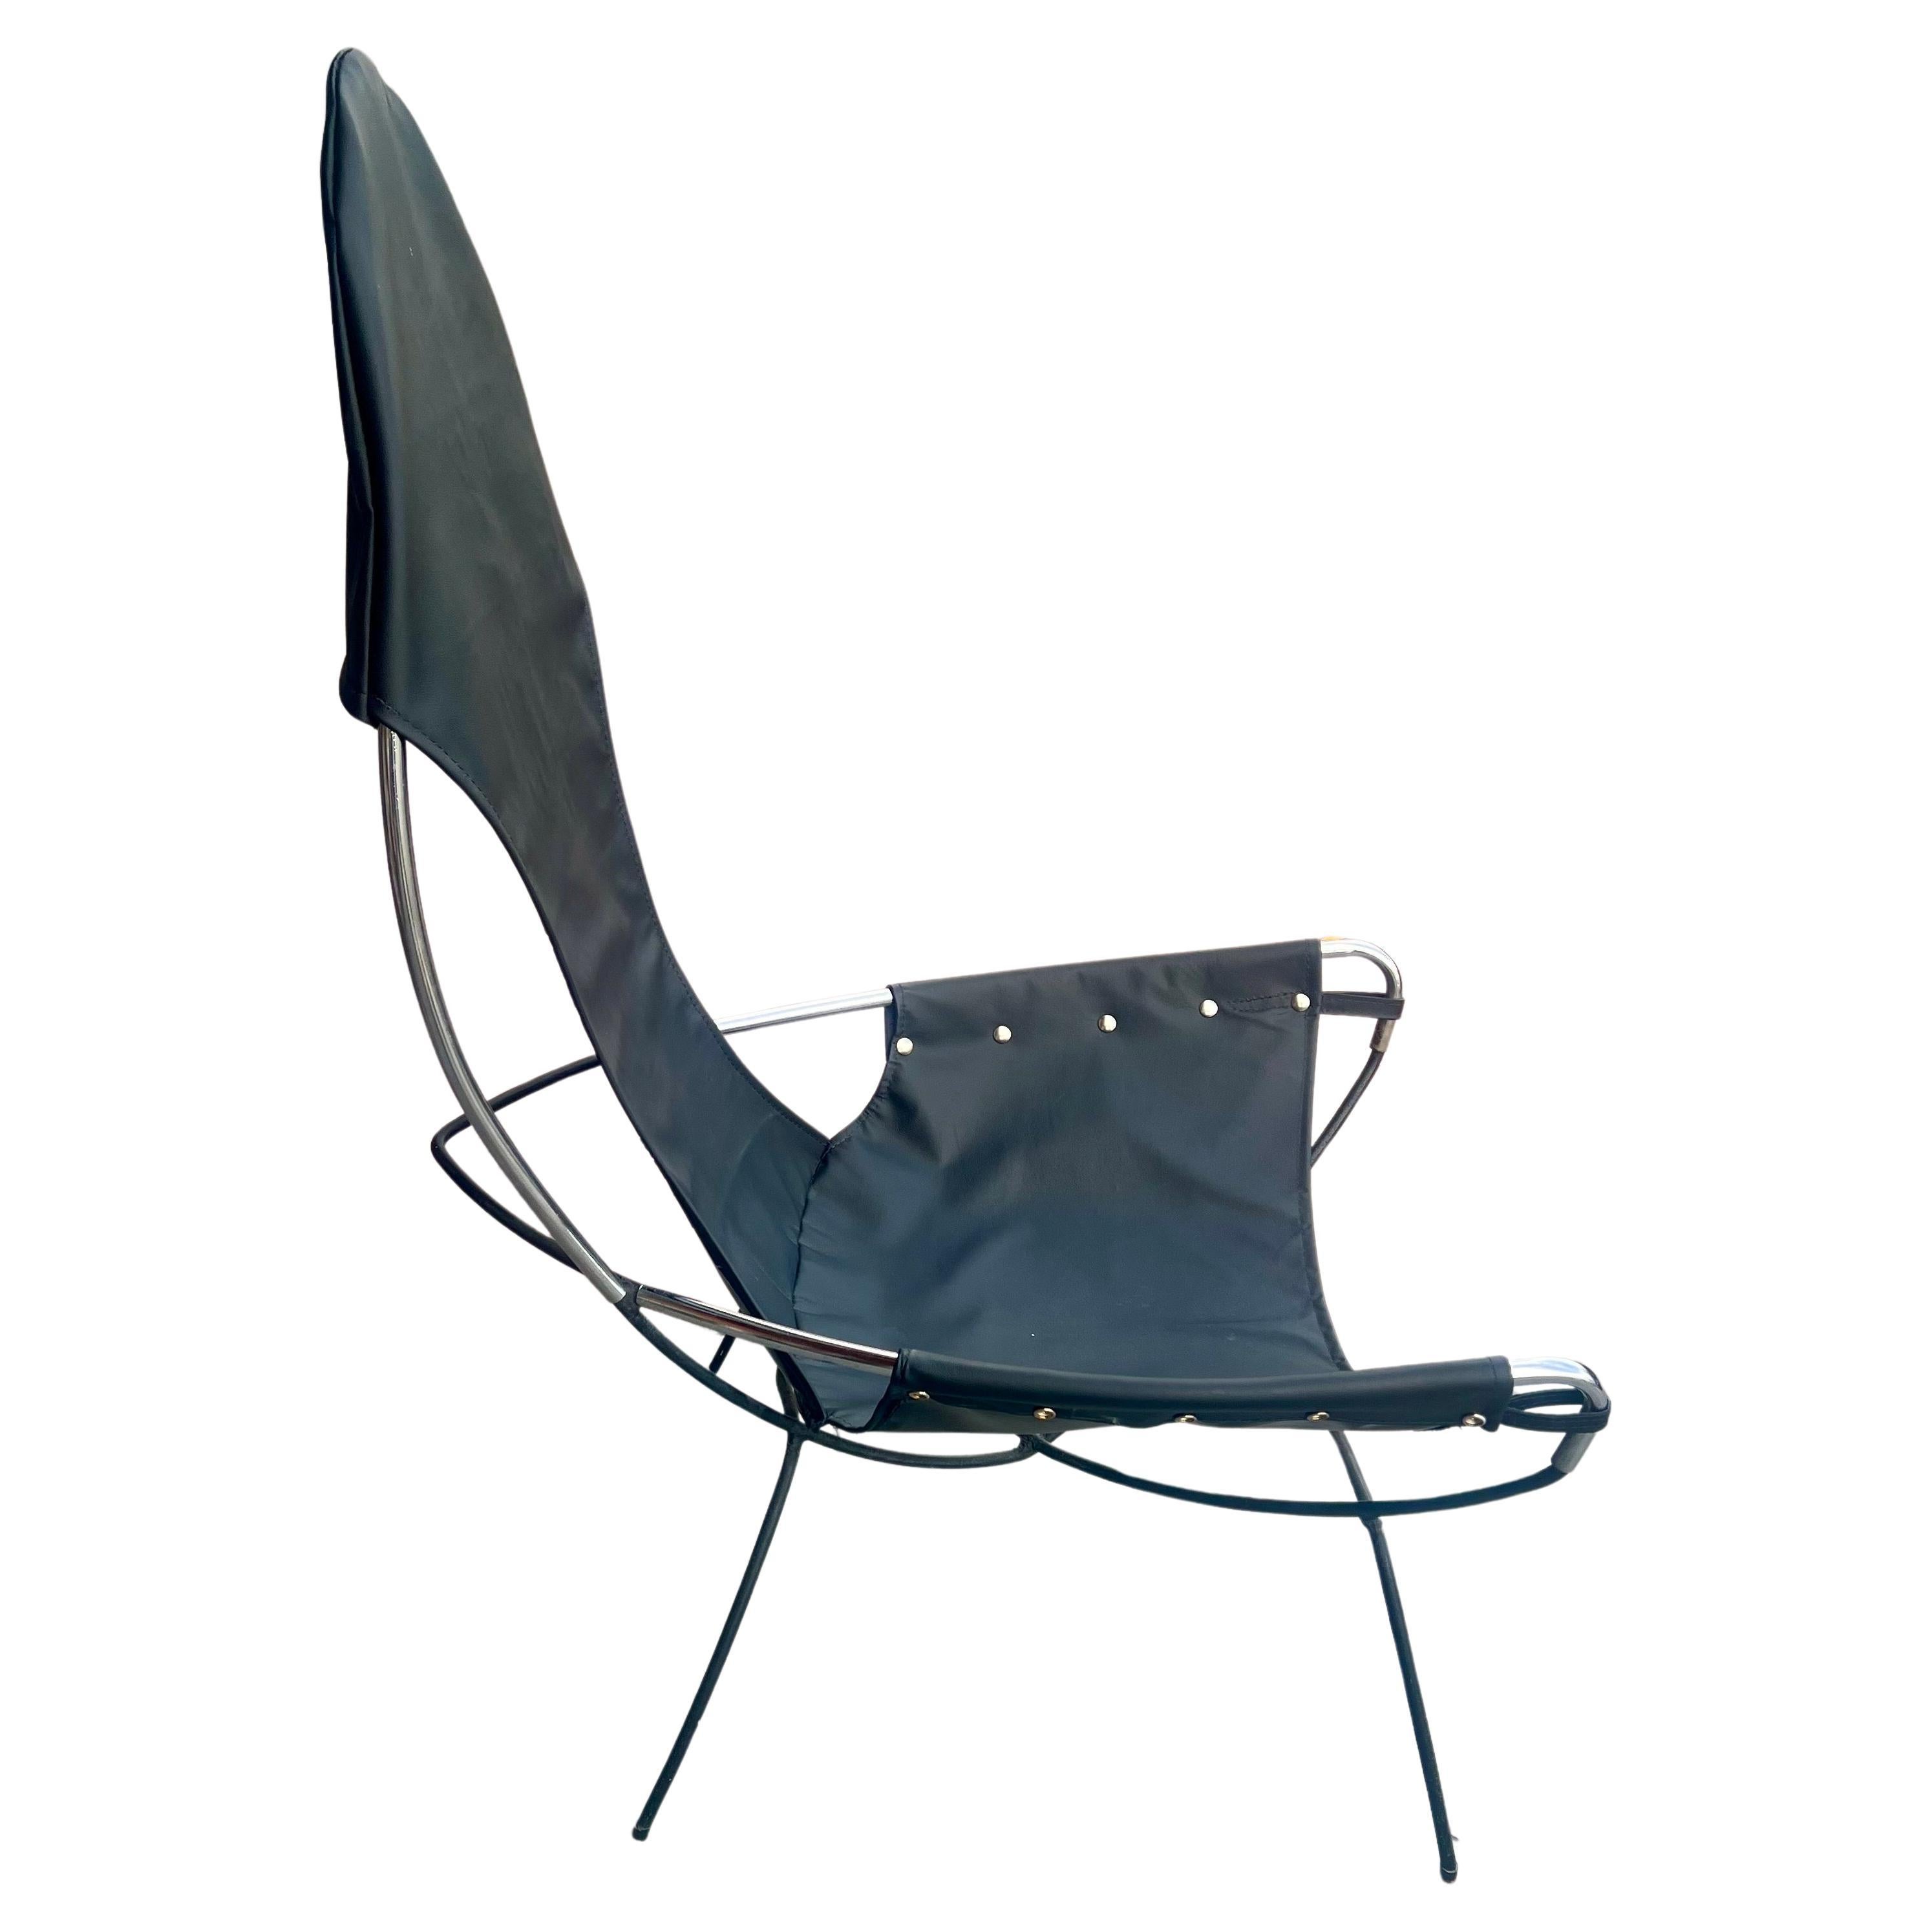 Ein einzigartiges Einzel Sling Stuhl in Chrom pipping, mit einem massiven Eisen-Kombination, frisch in schwarzem Leder und genietet, der Stuhl ist in seinem ursprünglichen Zustand ca. 1970er Jahre, der Stuhl ist bequem und leicht sehr sauberen